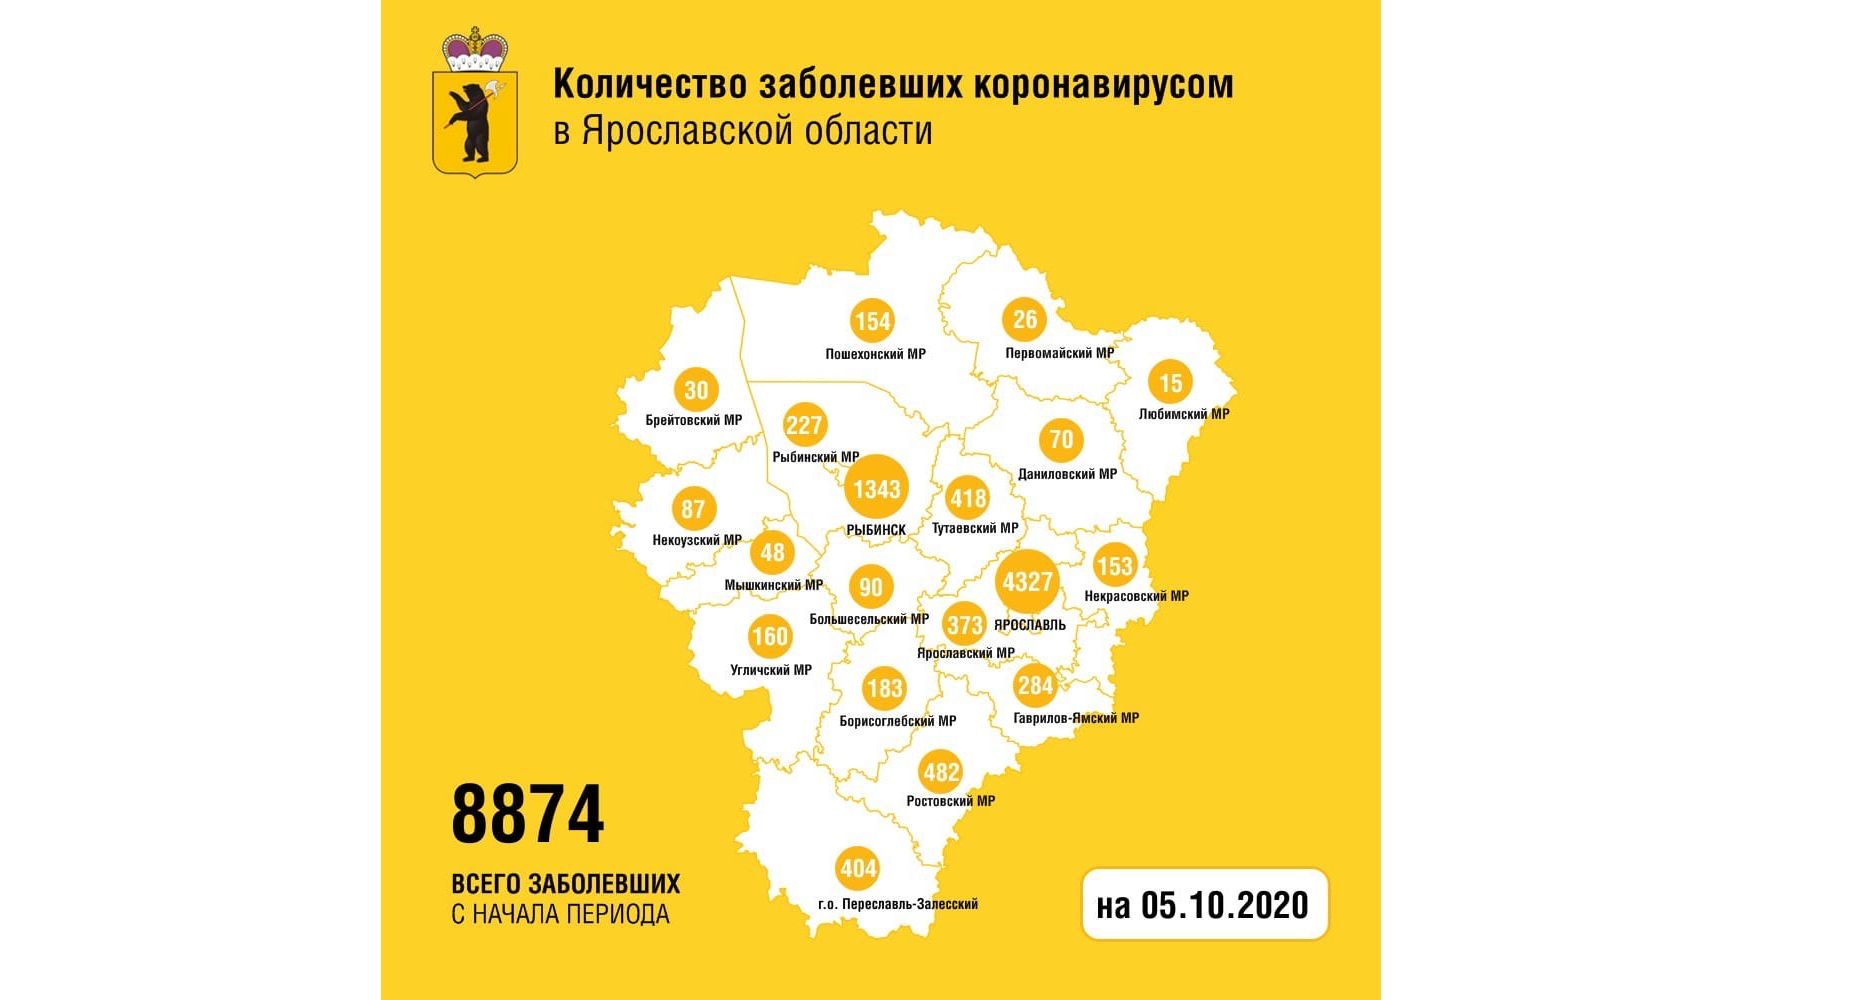 Количество заболевших коронавирусом в Ярославской области увеличилось на 54 человека, умерла женщина